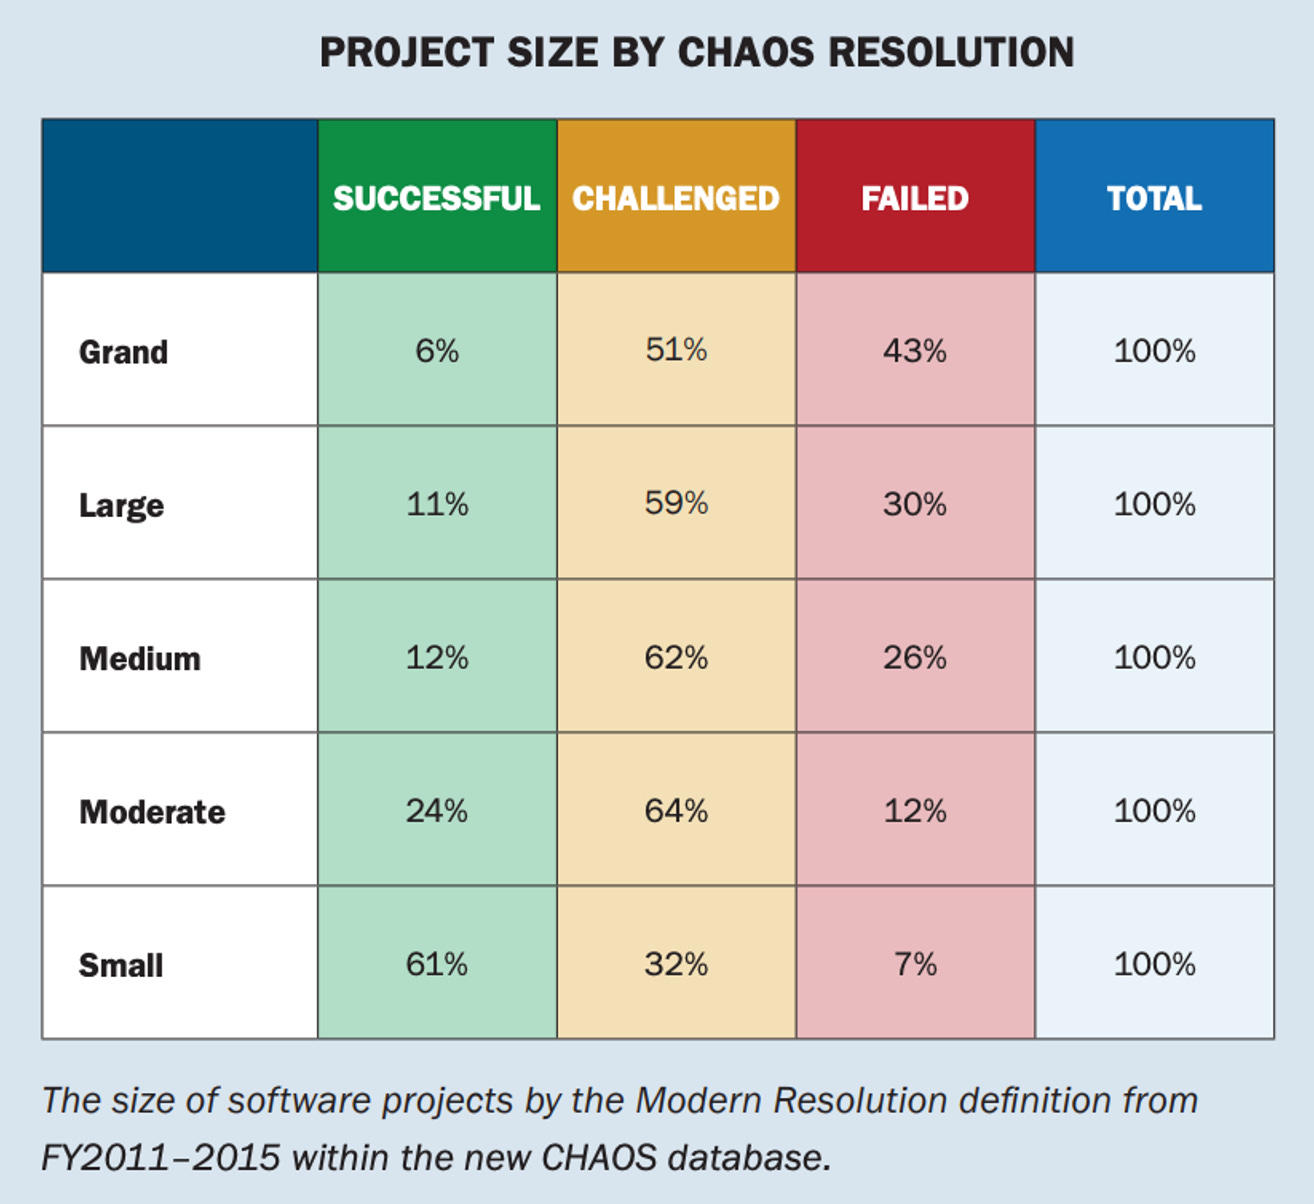 Tabla del Chaos Report mostrando la tasa de éxito de los proyectos de software de acuerdo a su tamaño